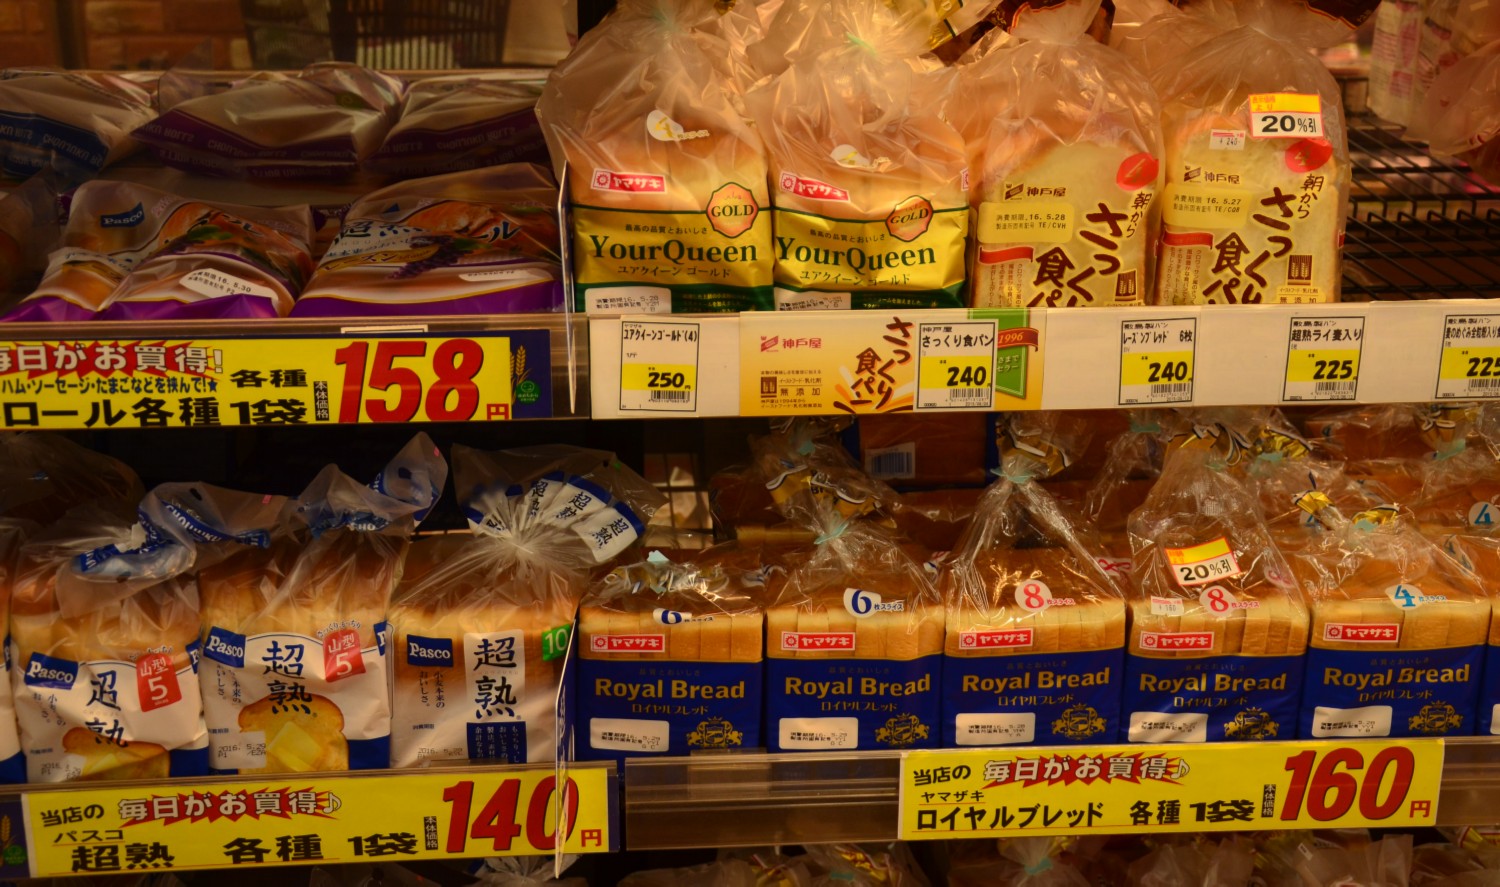 1 csomag szeletelt kenyer (6 szelet) 1.3 - 1.9 Euro kozott